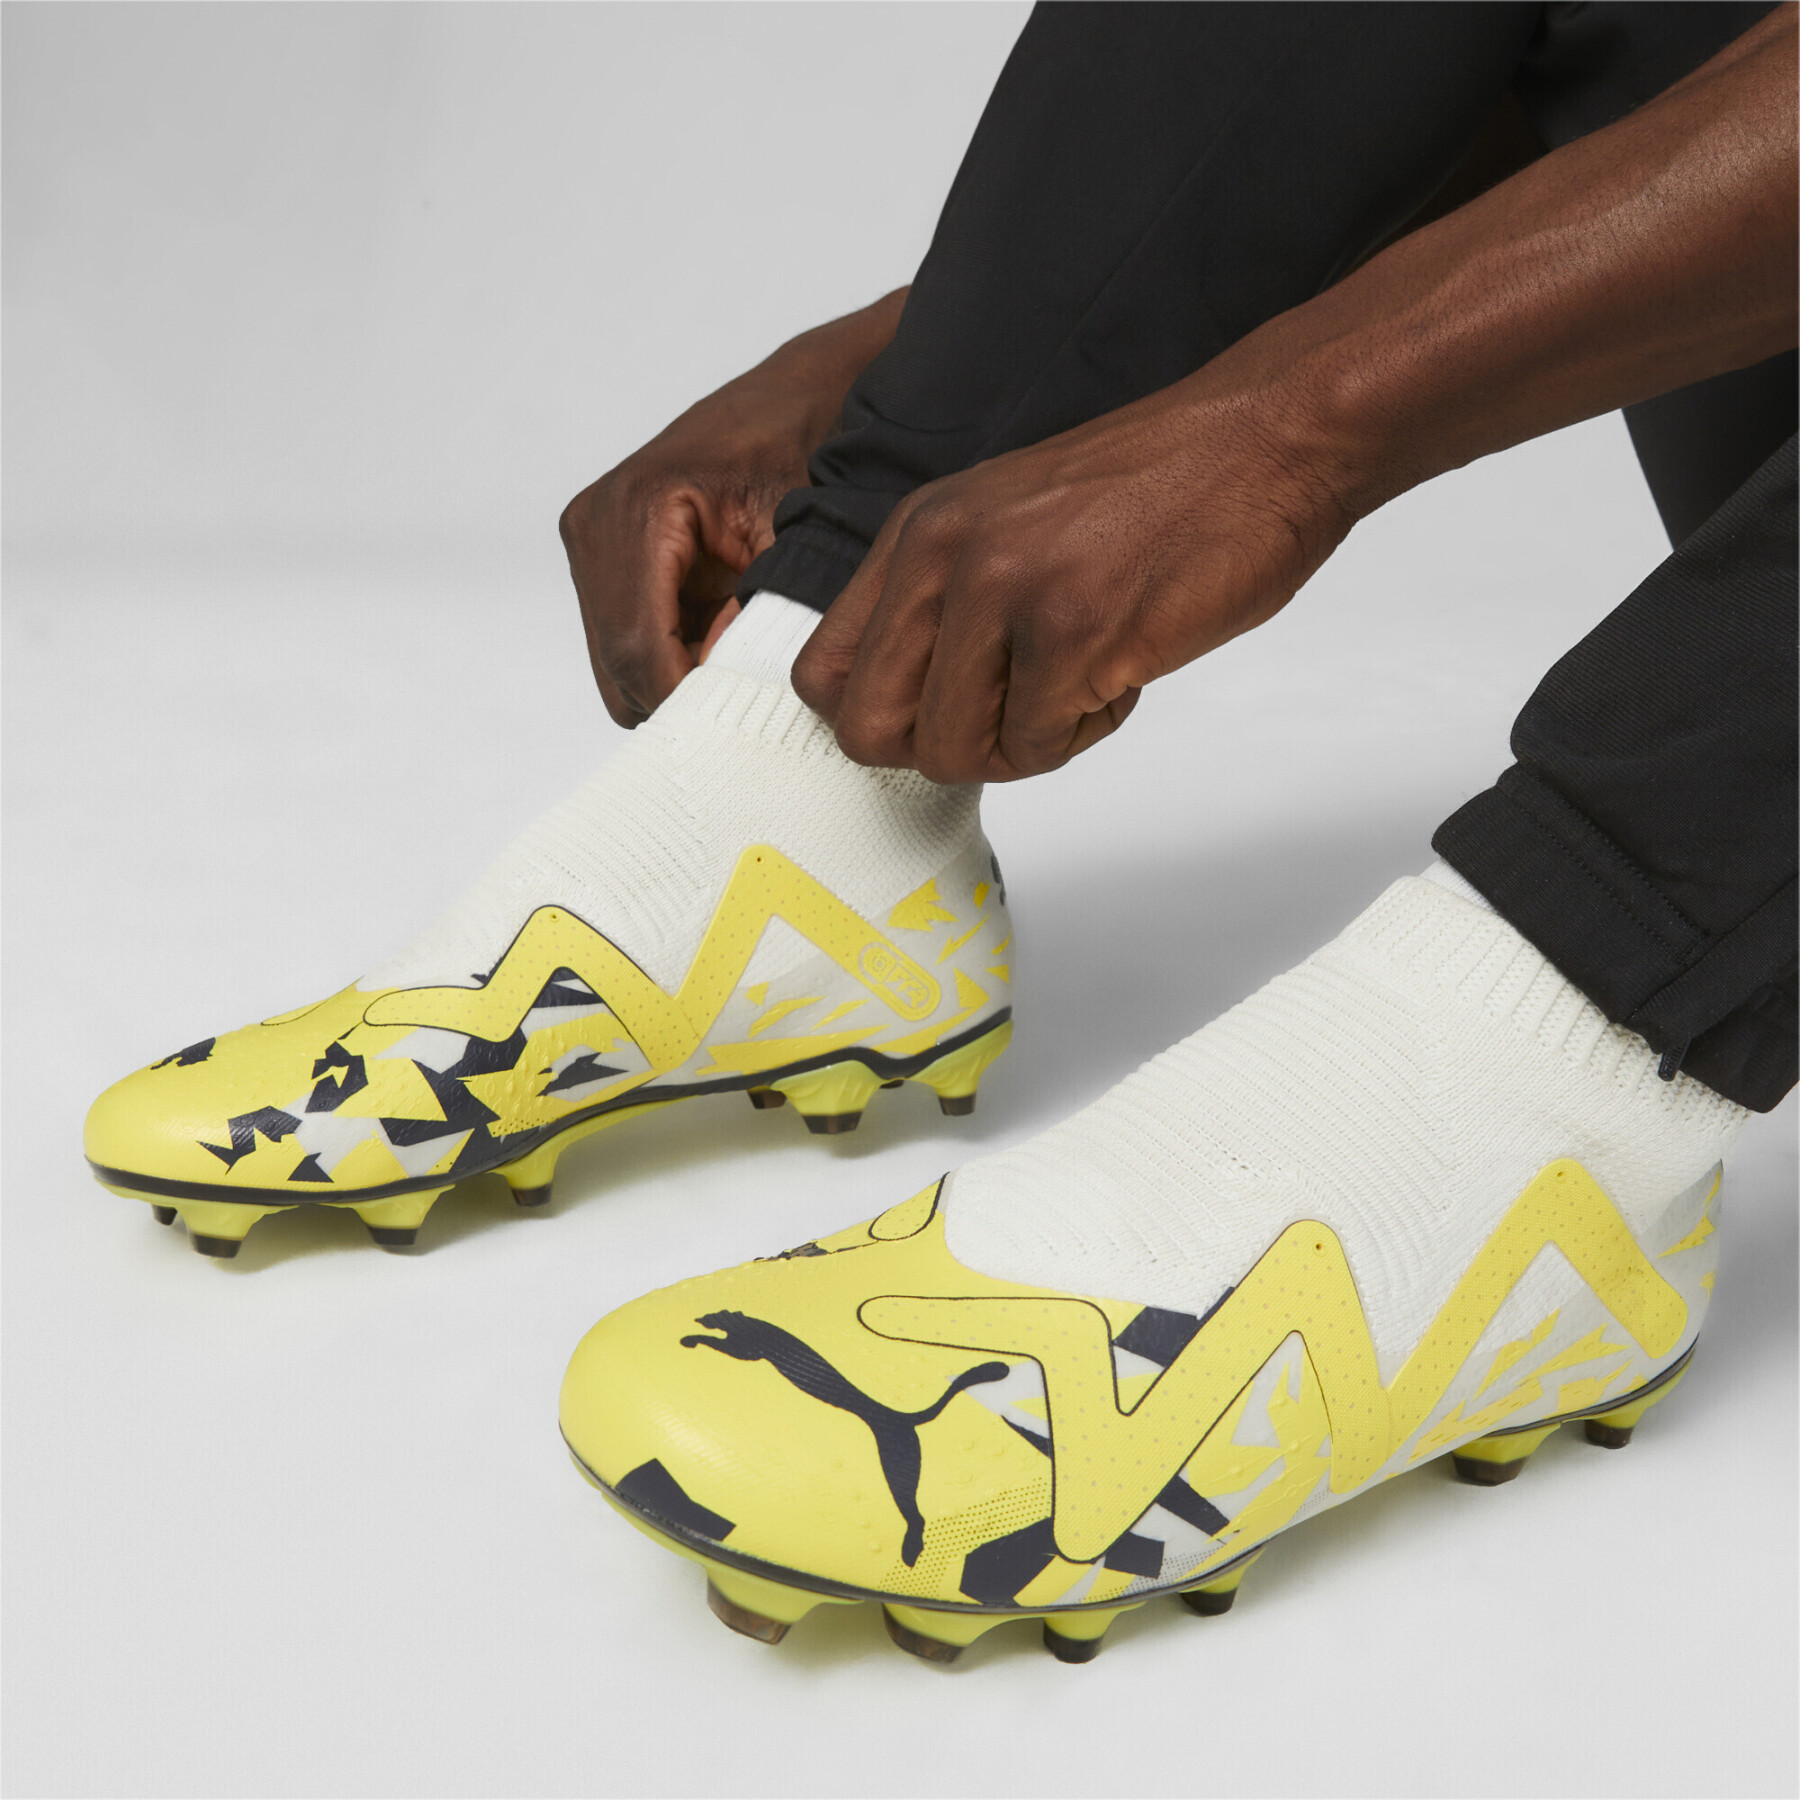 Sapatos de futebol Puma Future Match+ LL FG/AG - Voltage Pack